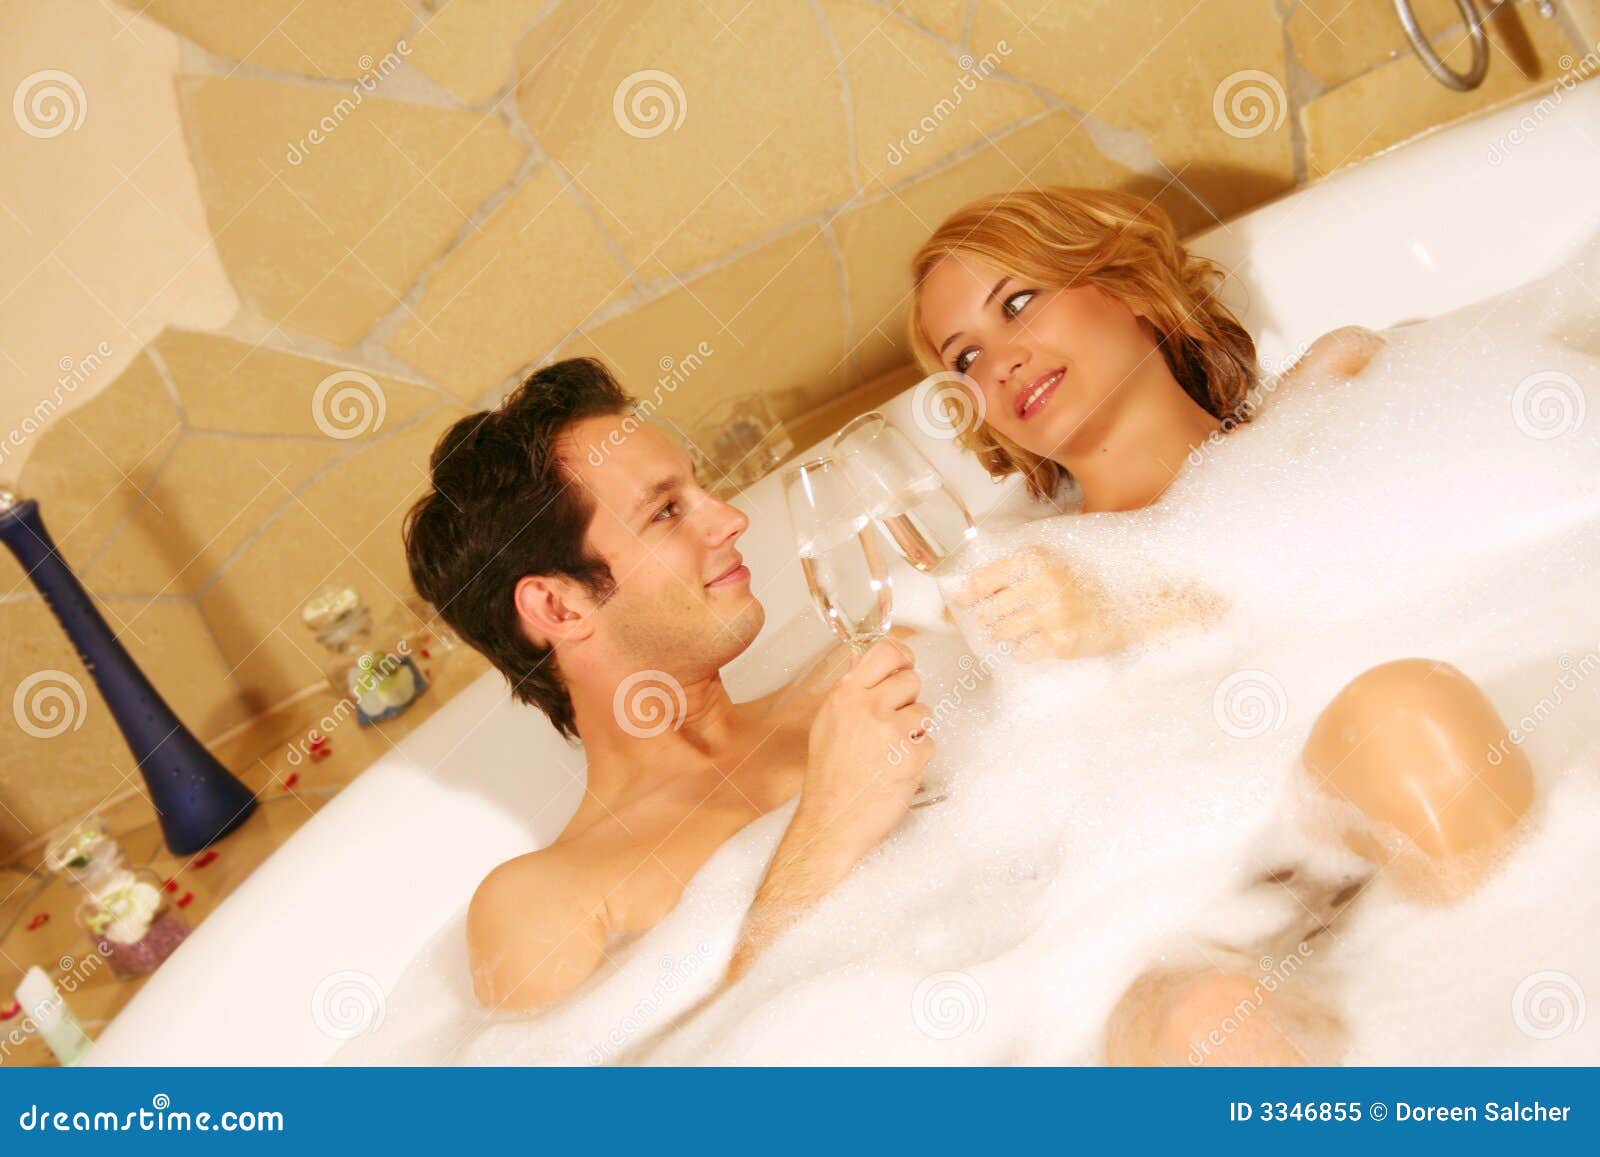 Жена с другом в ванной. Семейные пары в ванной. Подростковая пара в ванной. Супружеская пара в ванной. Молодая парочка в ванной.